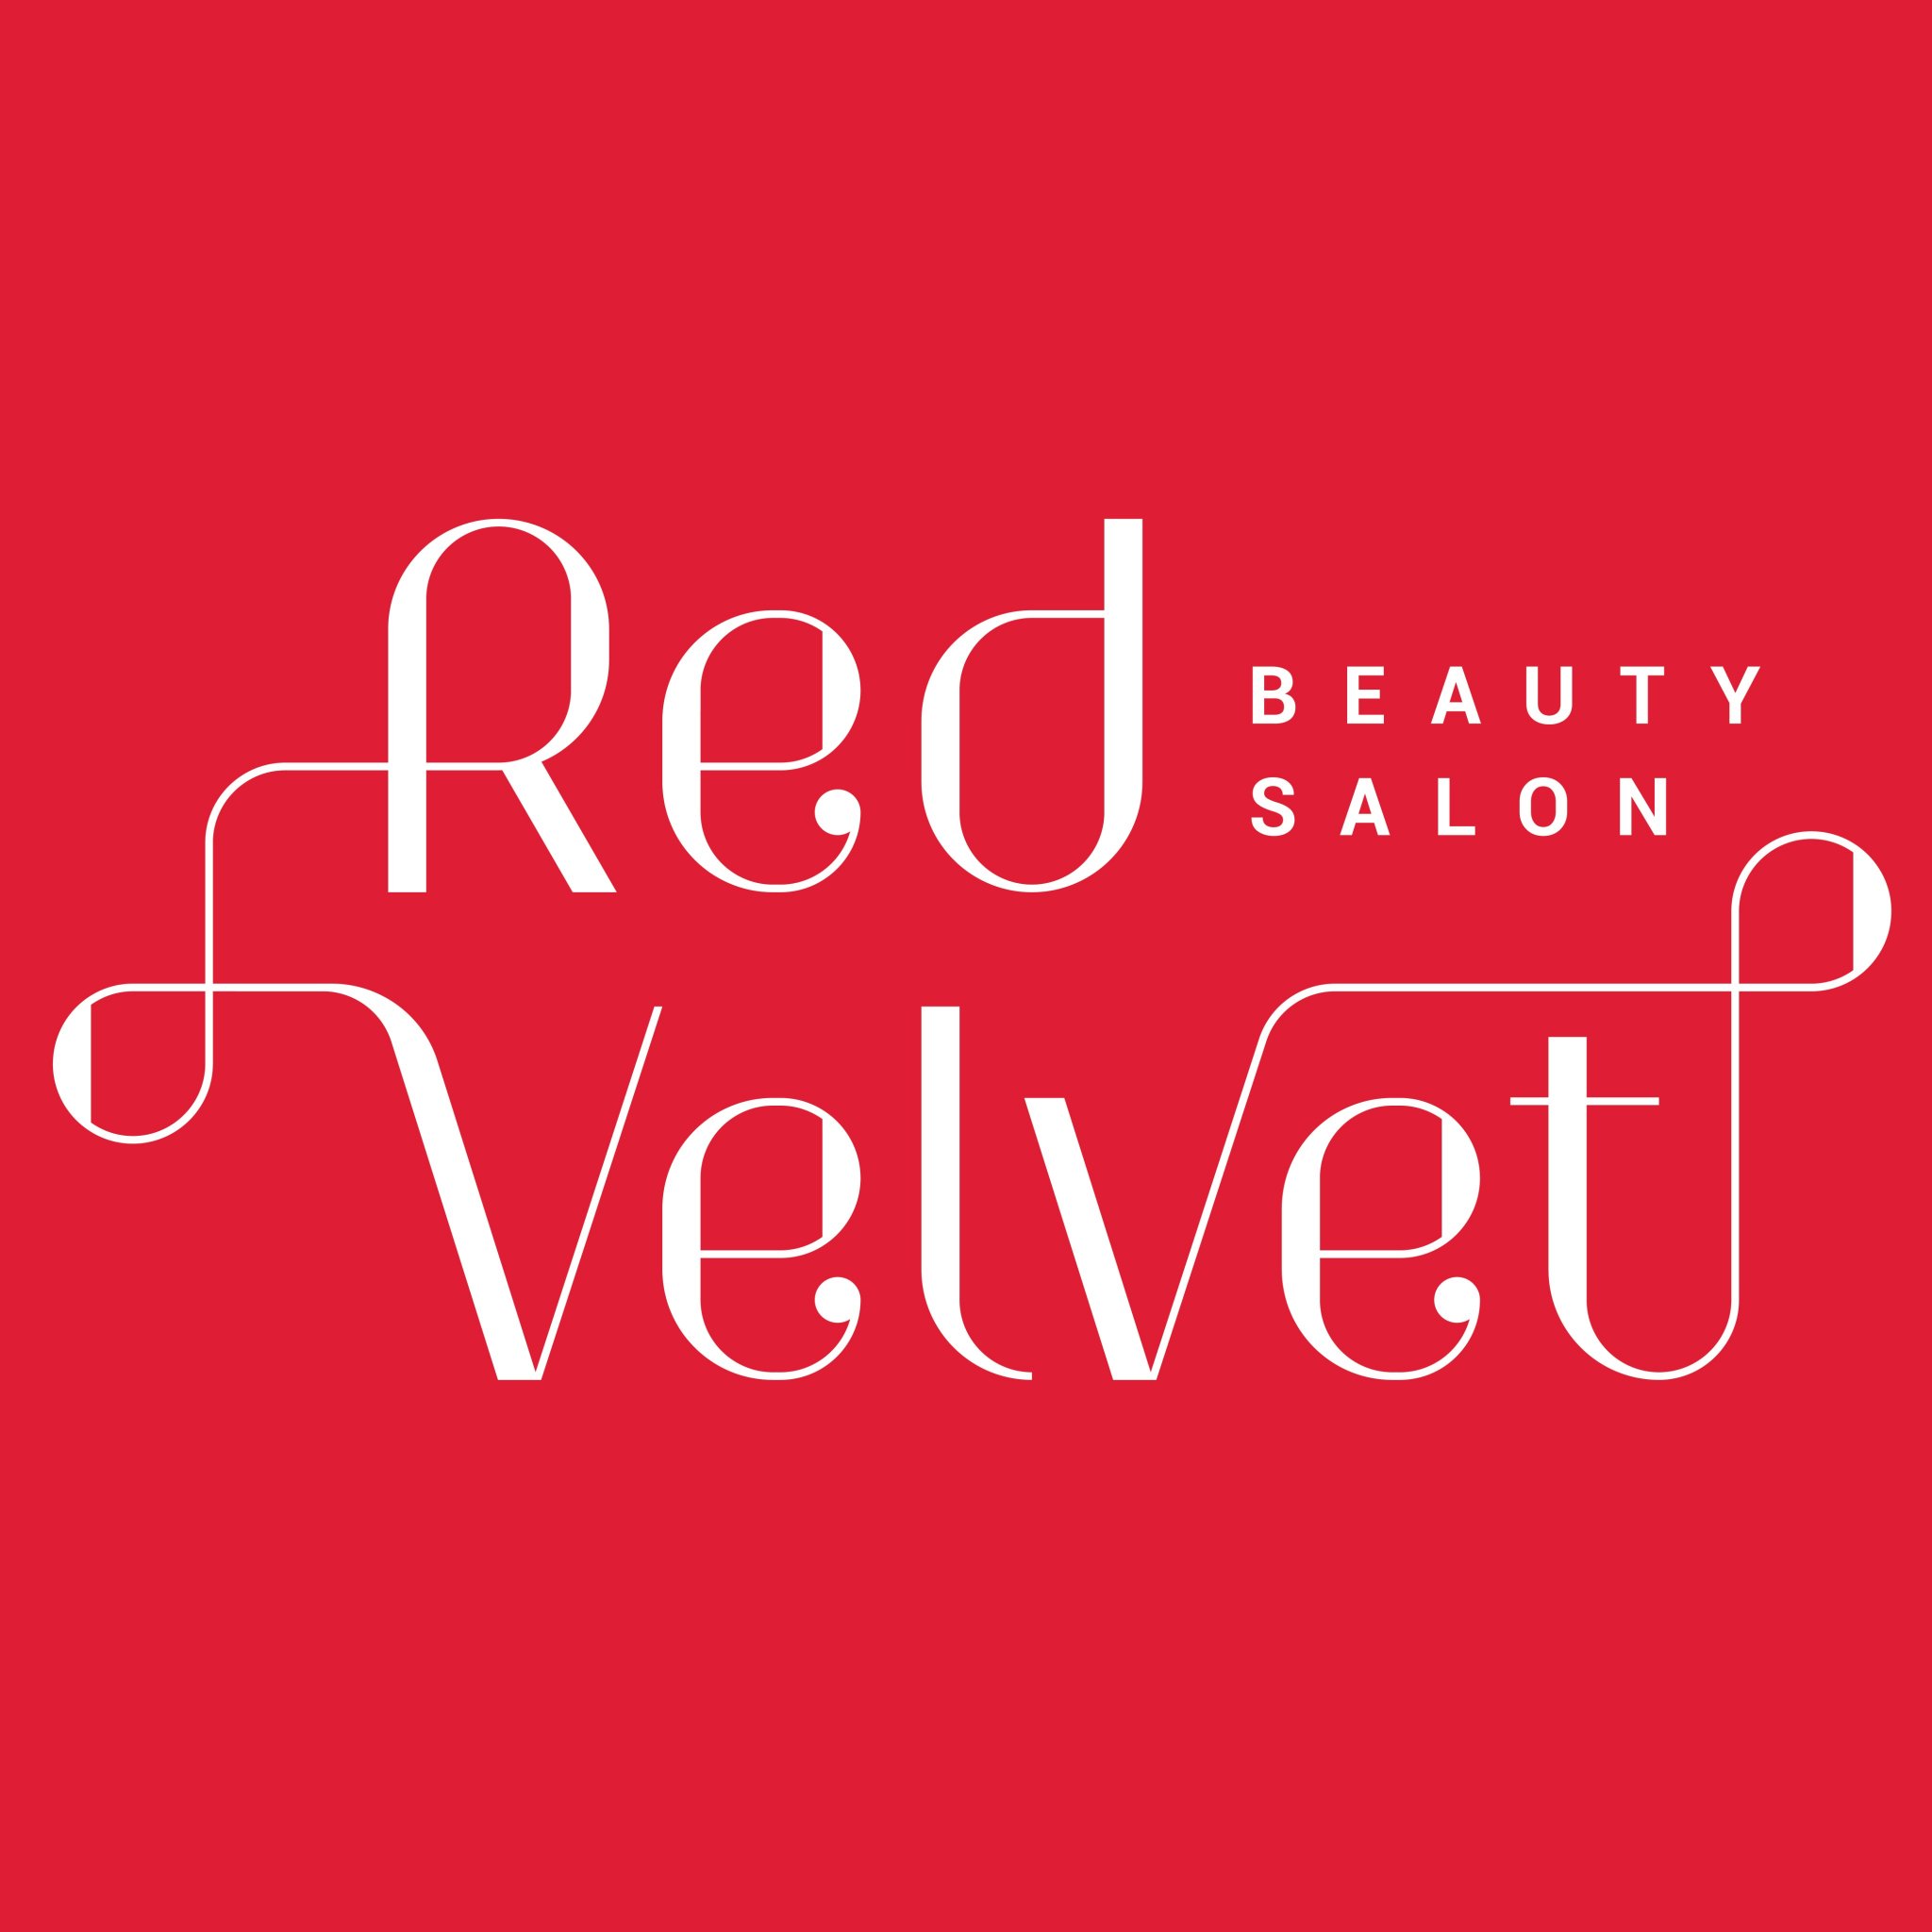 Red Velvet Beauty Salon